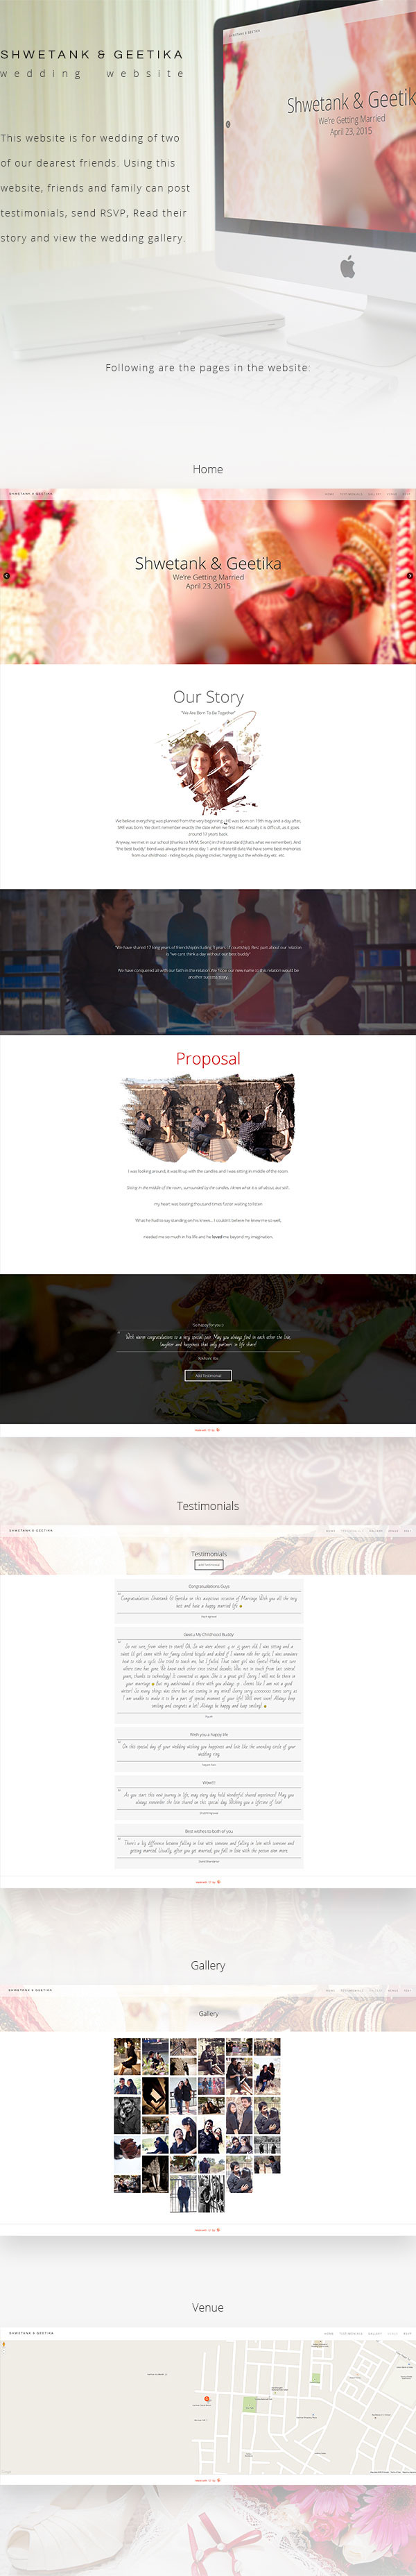 Website design wedding indian